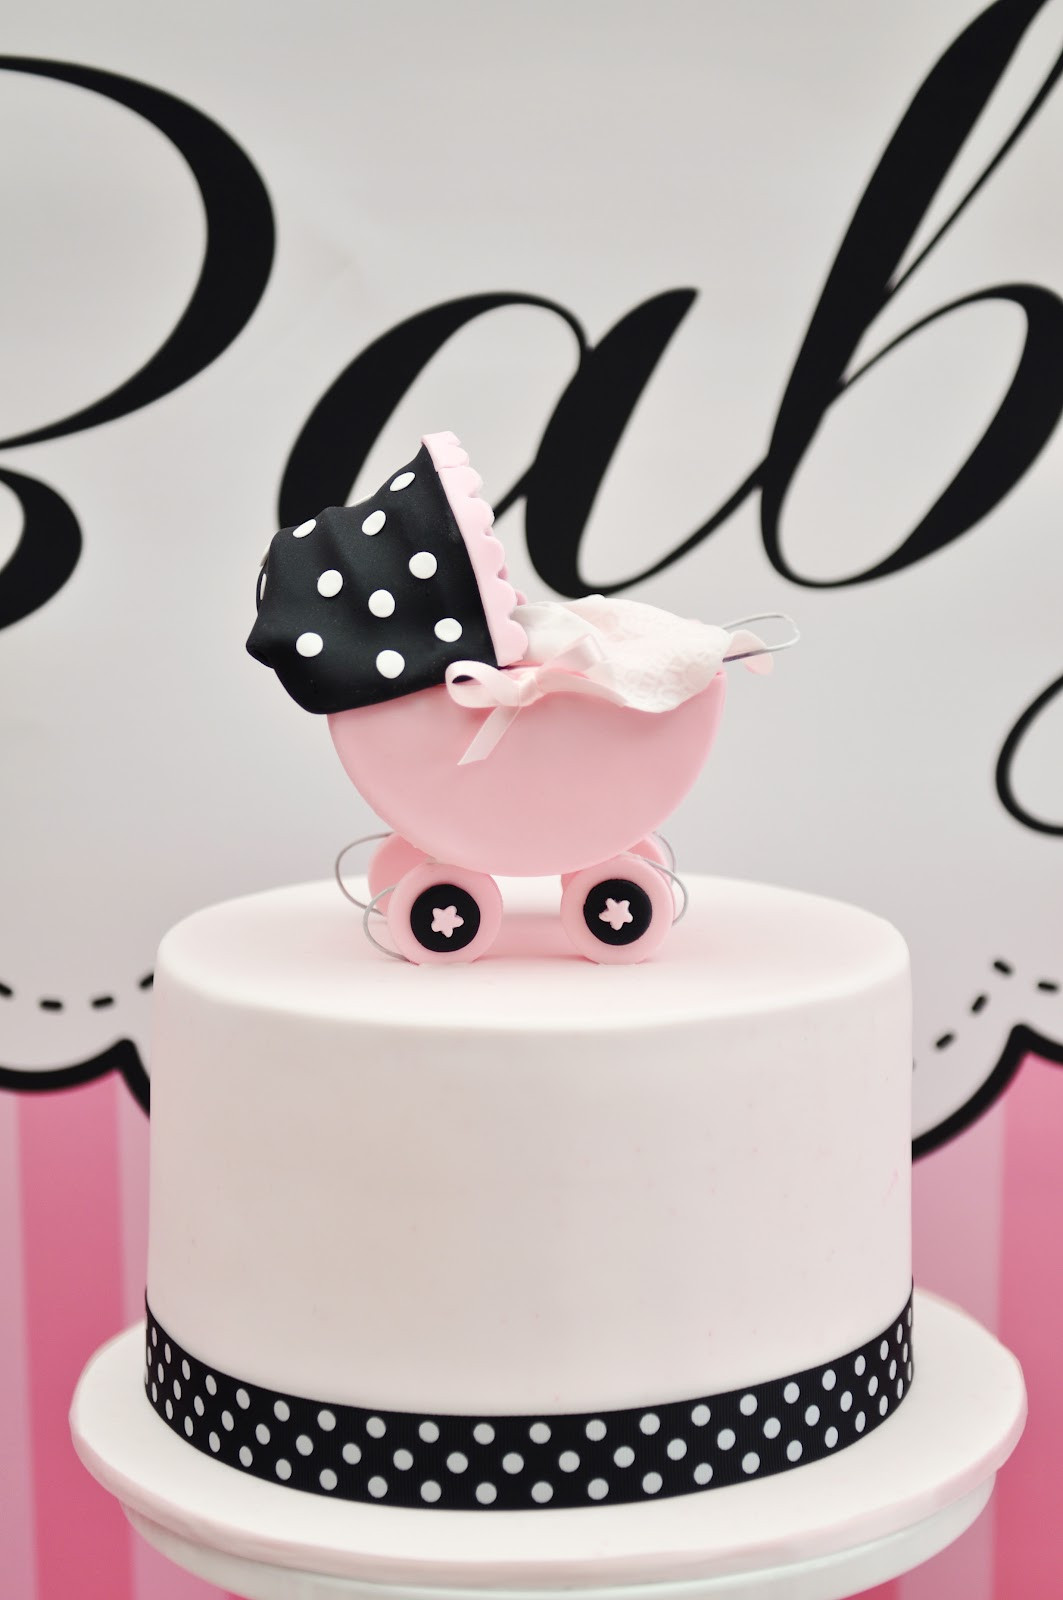 White Baby Shower Cake
 Studio Cake Pink white and Black baby shower